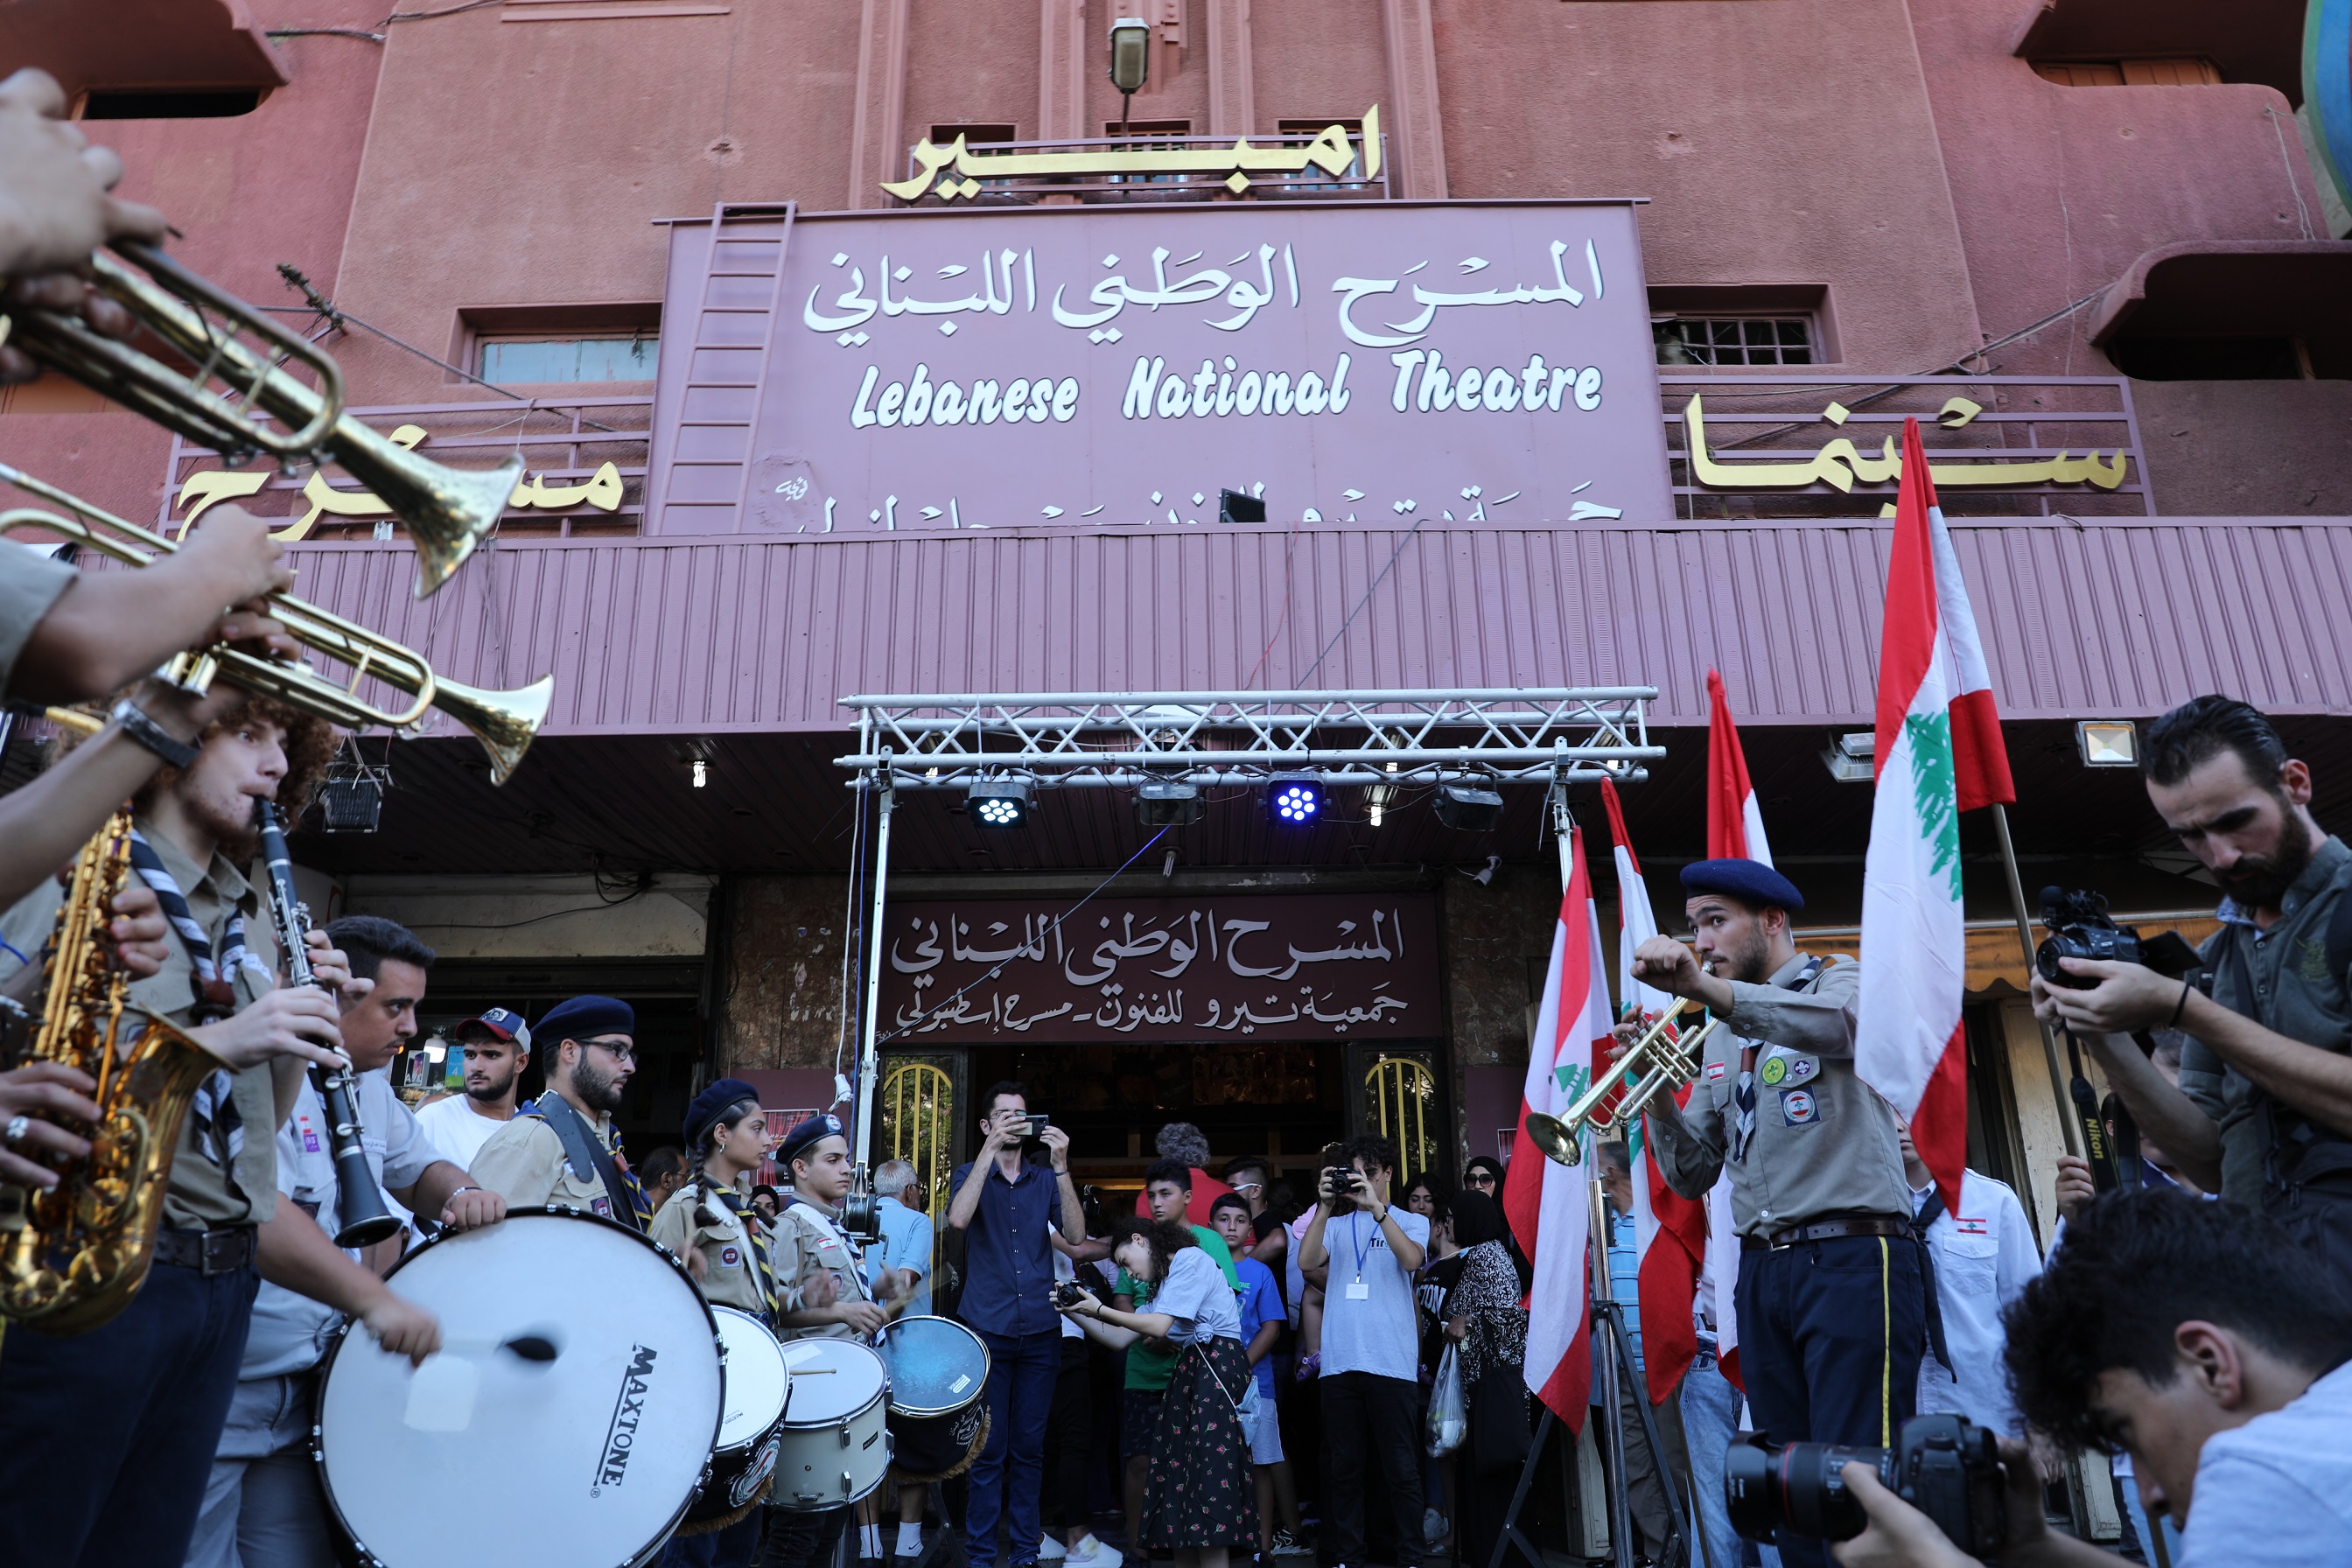 مهرجان طرابلس المسرّحيّ الدّوليّ للحكواتي في المسرح الوطني اللبناني